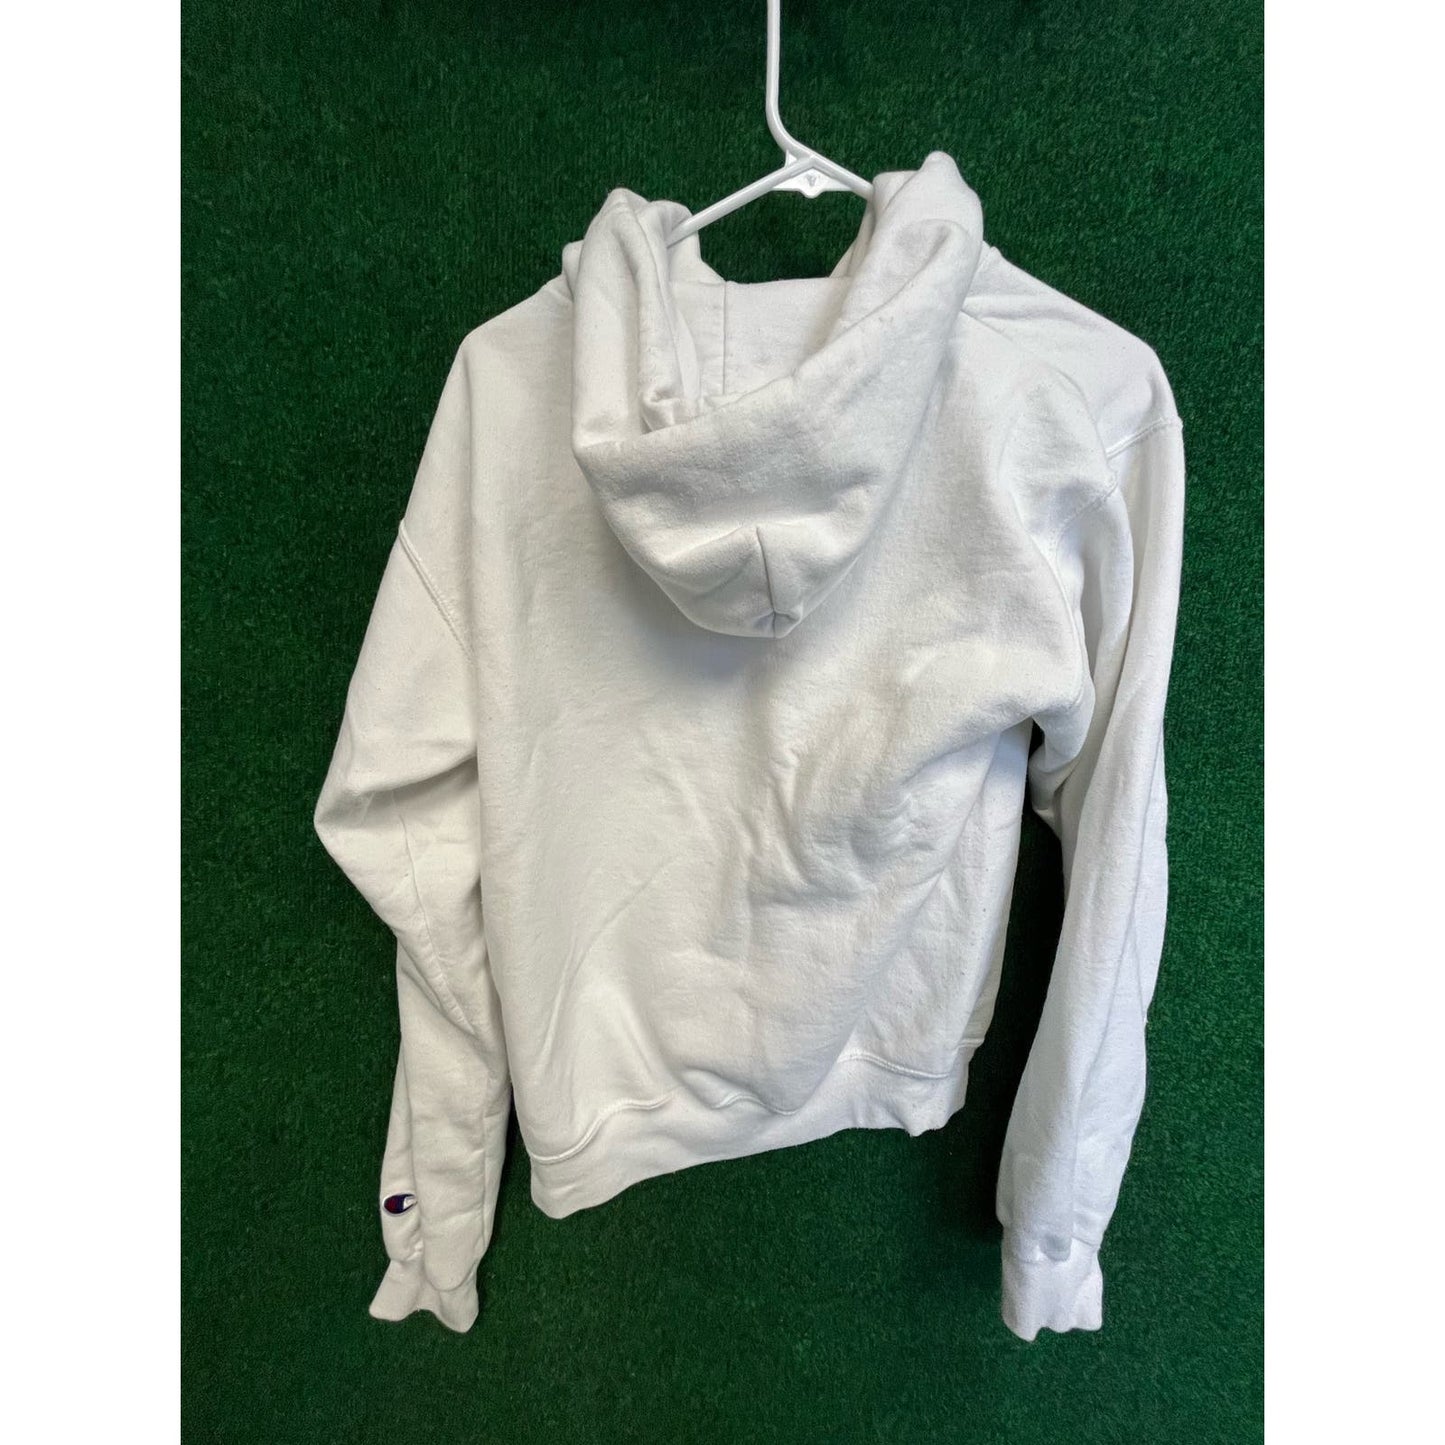 Y2K Georgetown University Pullover White Sweatshirt Hoodie Small